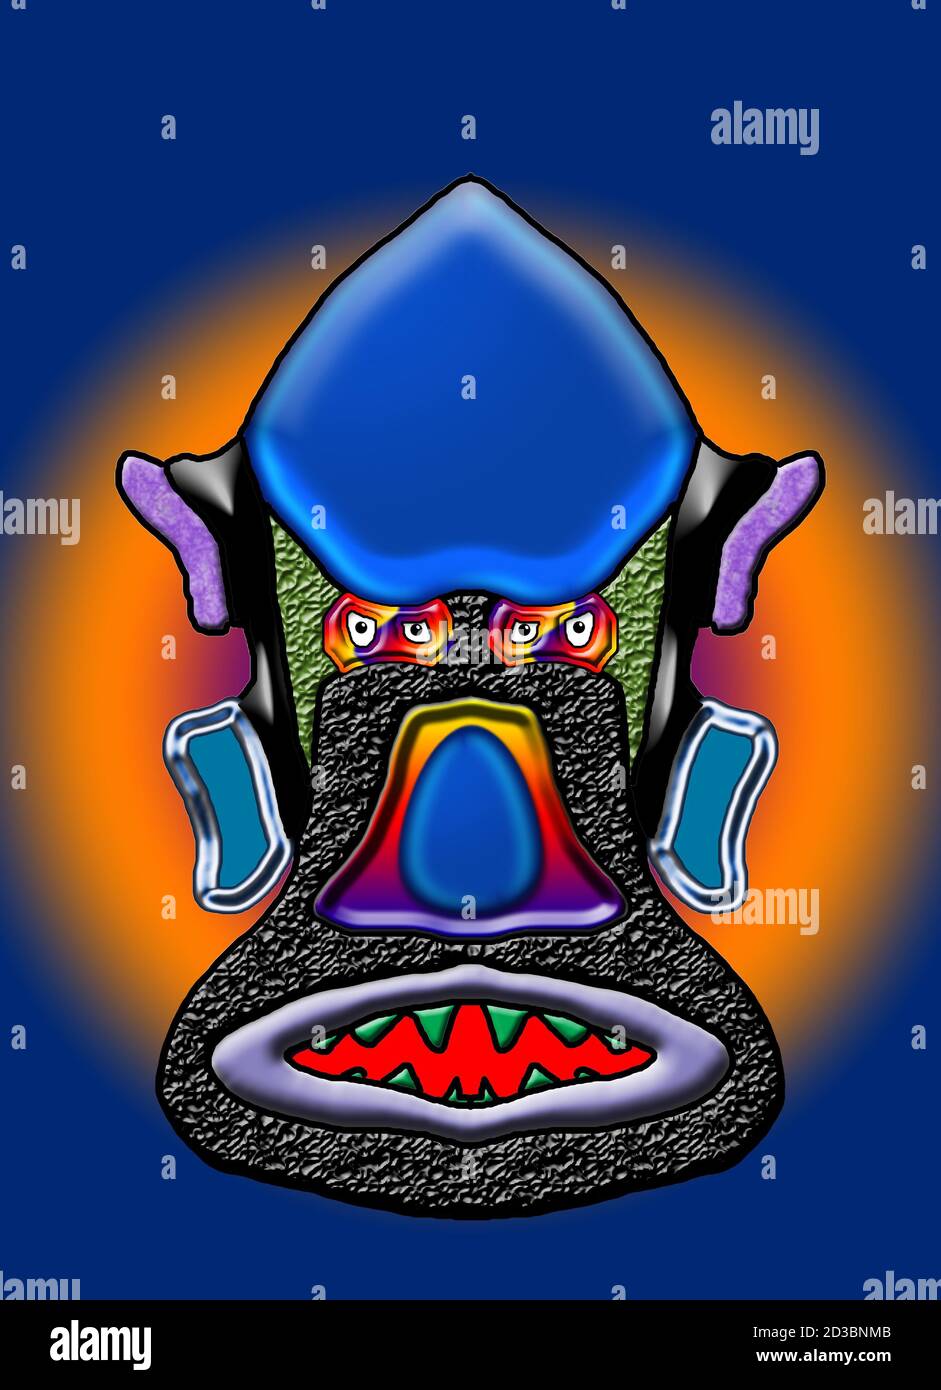 Alien Face Digital ArtWork Image fantasy design con caratteristiche di forma e texture con colori di sfondo a completamento colori diversi usi. Foto Stock